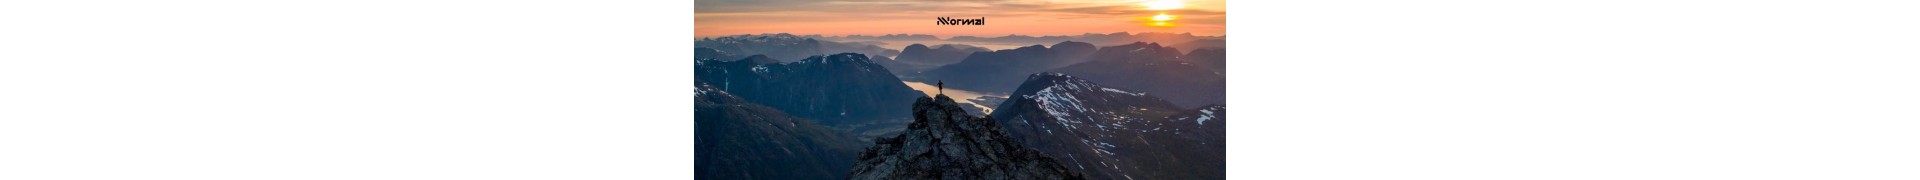 NNormal es el proyecto personal de Kilian, una marca nacida desde los senderos de todo el mundo y que viene a revolucionar el universo del trail running